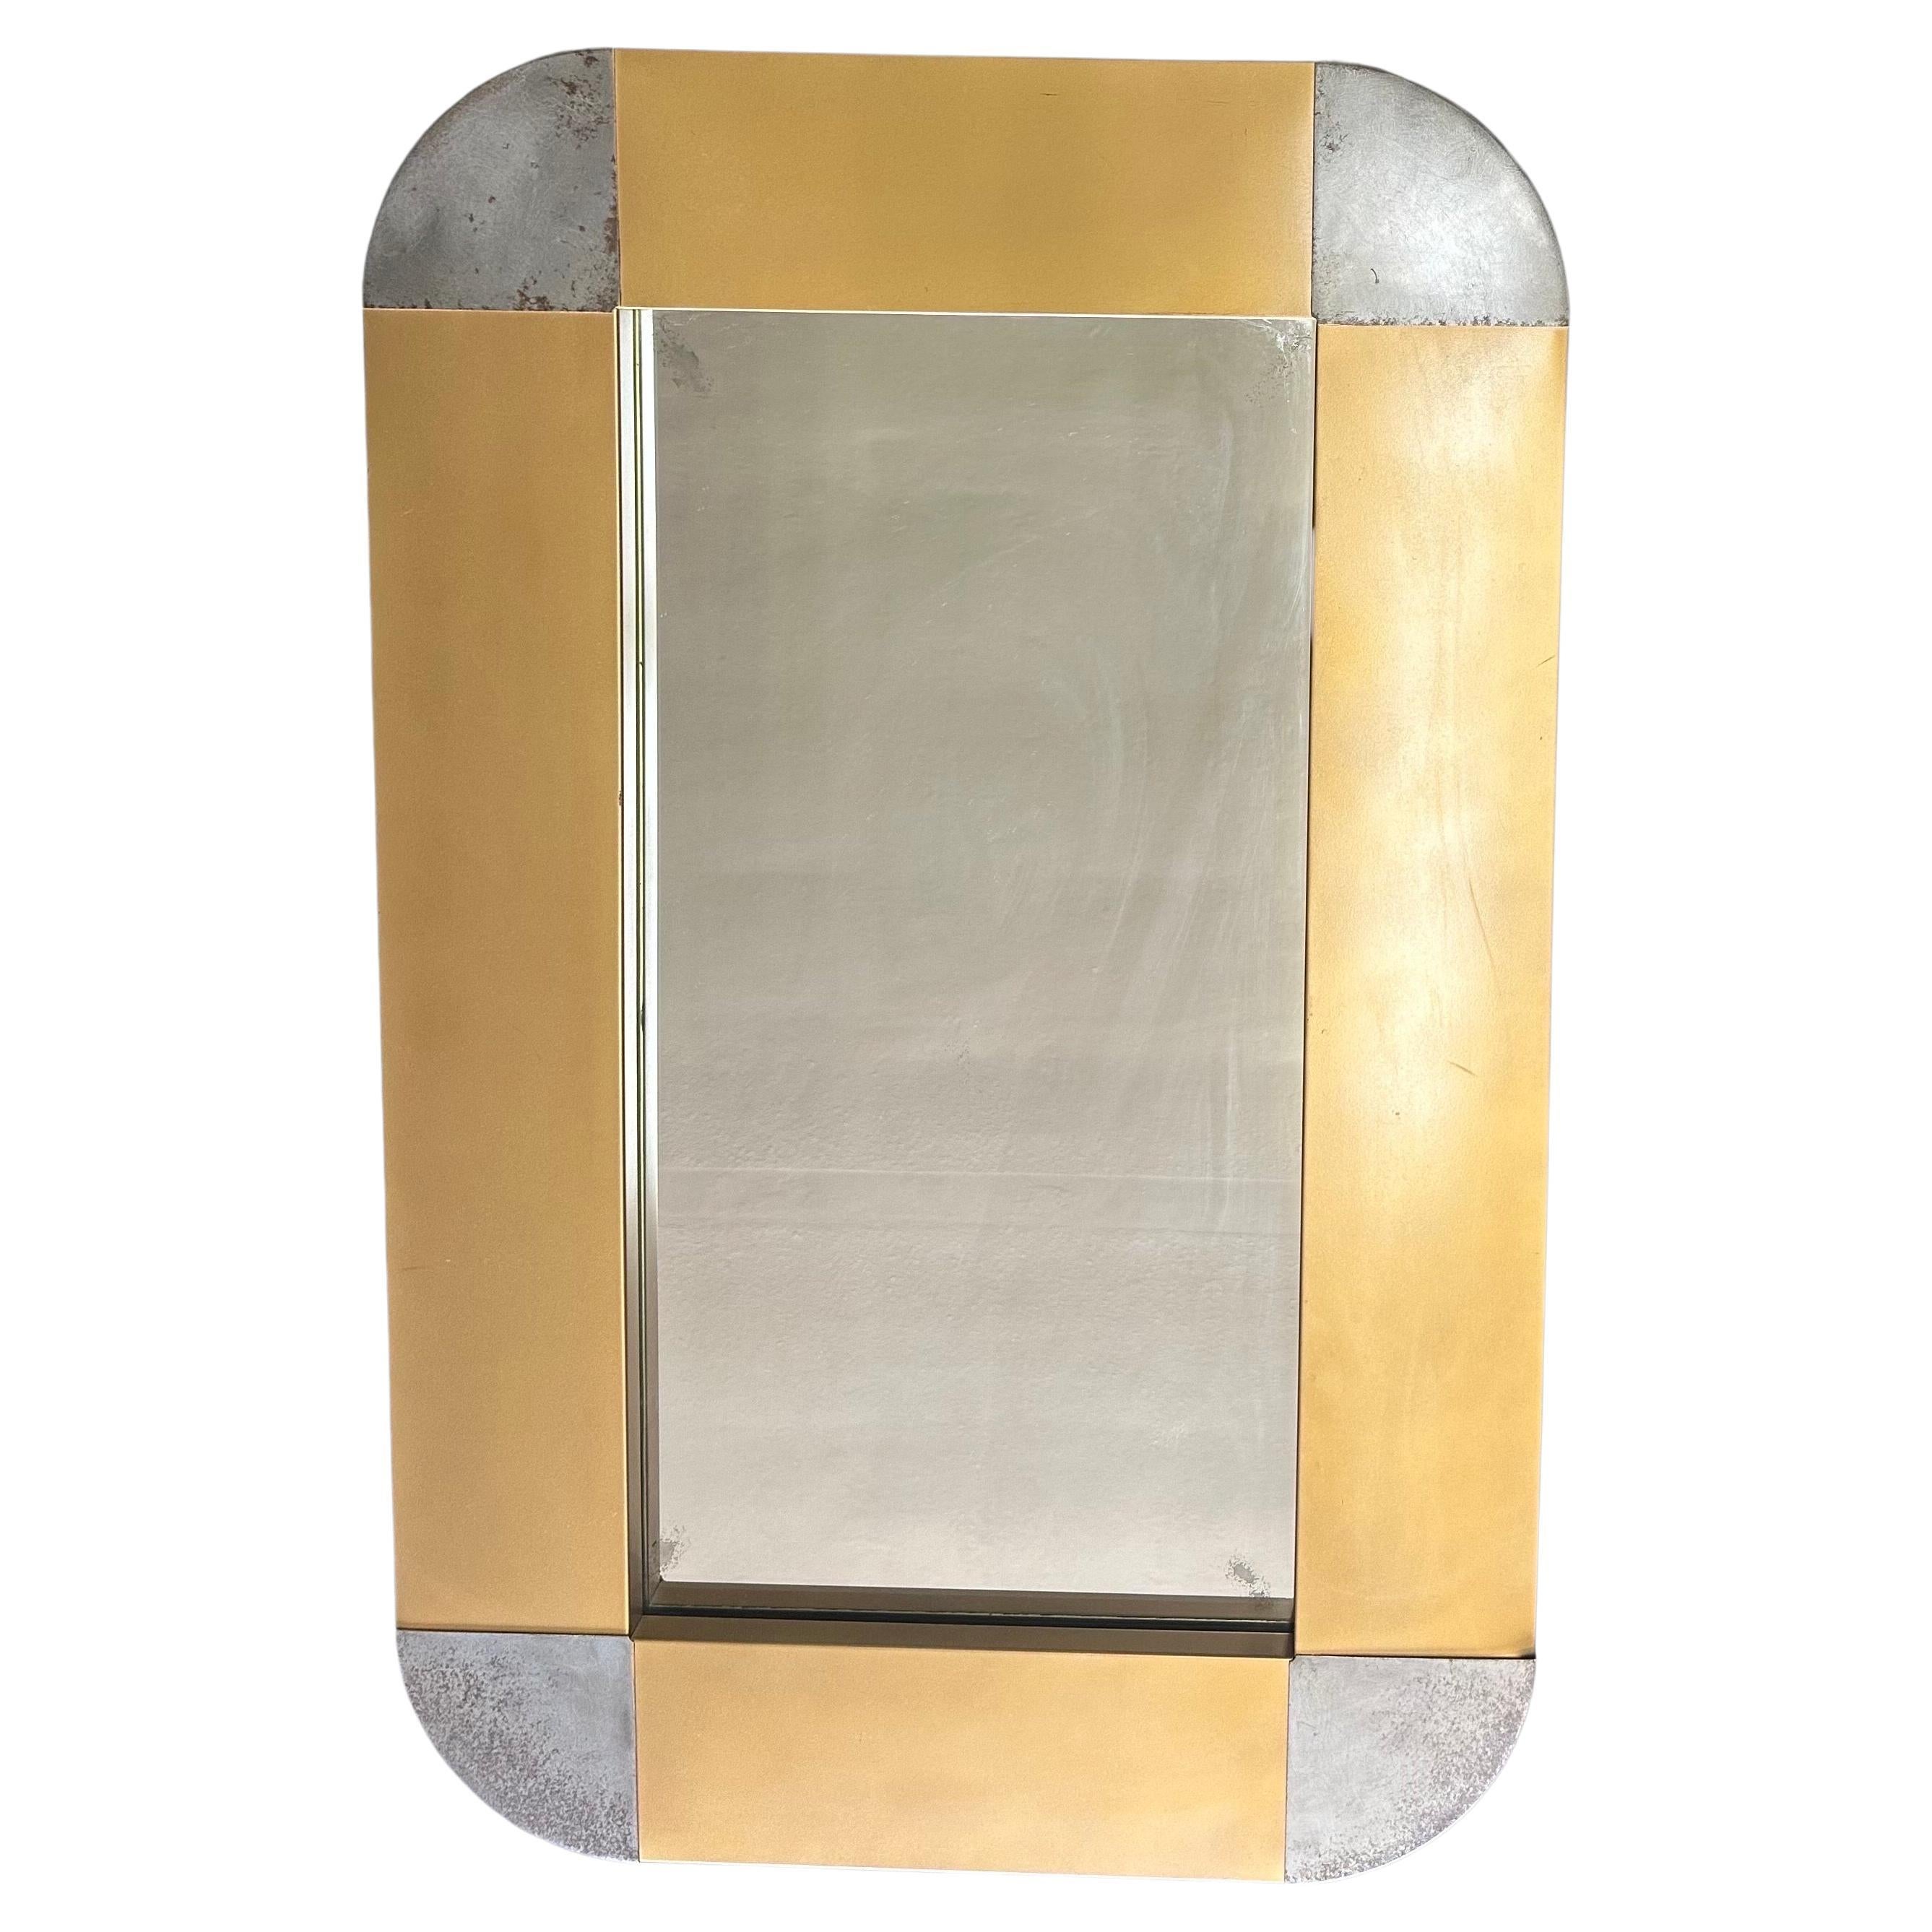 Schöner und seltener rechteckiger MCM-Wandspiegel aus Messing und Stahl von Curtis Jere für Artisian House, ca. 1970er Jahre.  Das Stück ist in gutem Vintage-Zustand mit einer wunderbaren Patina auf dem Messing und dem Stahl.  Der Spiegel kann